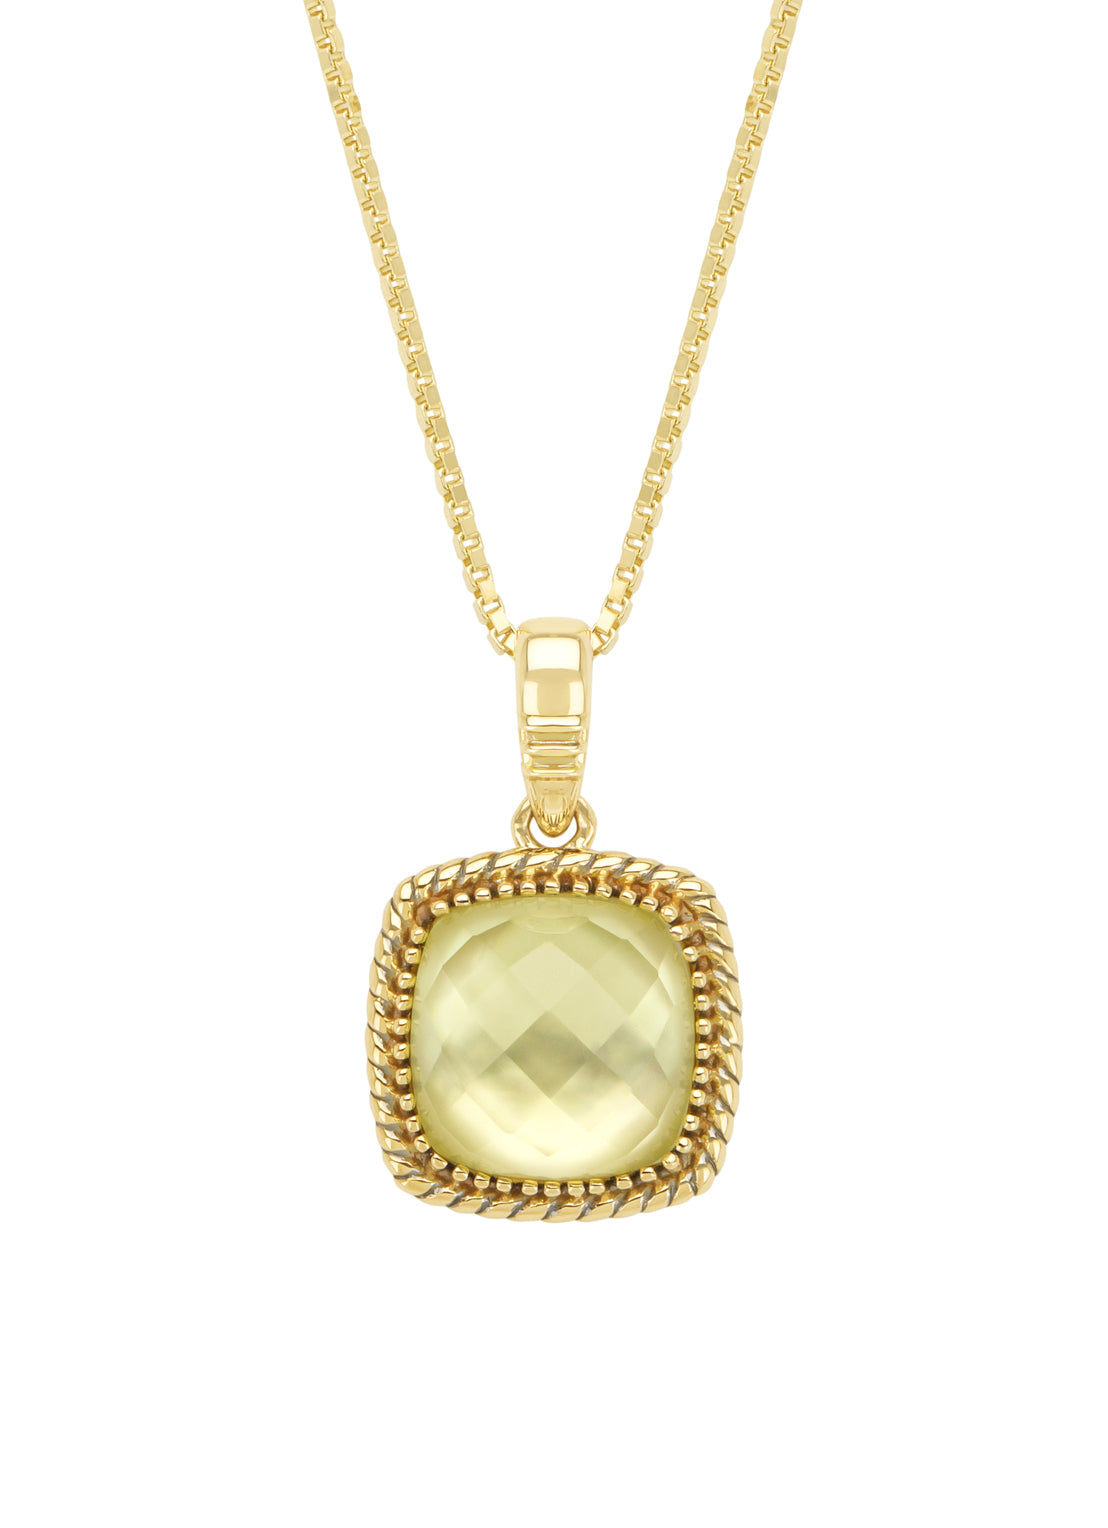 Yellow gold pendant, 3.73 ct lemon quartz with pare, velvet